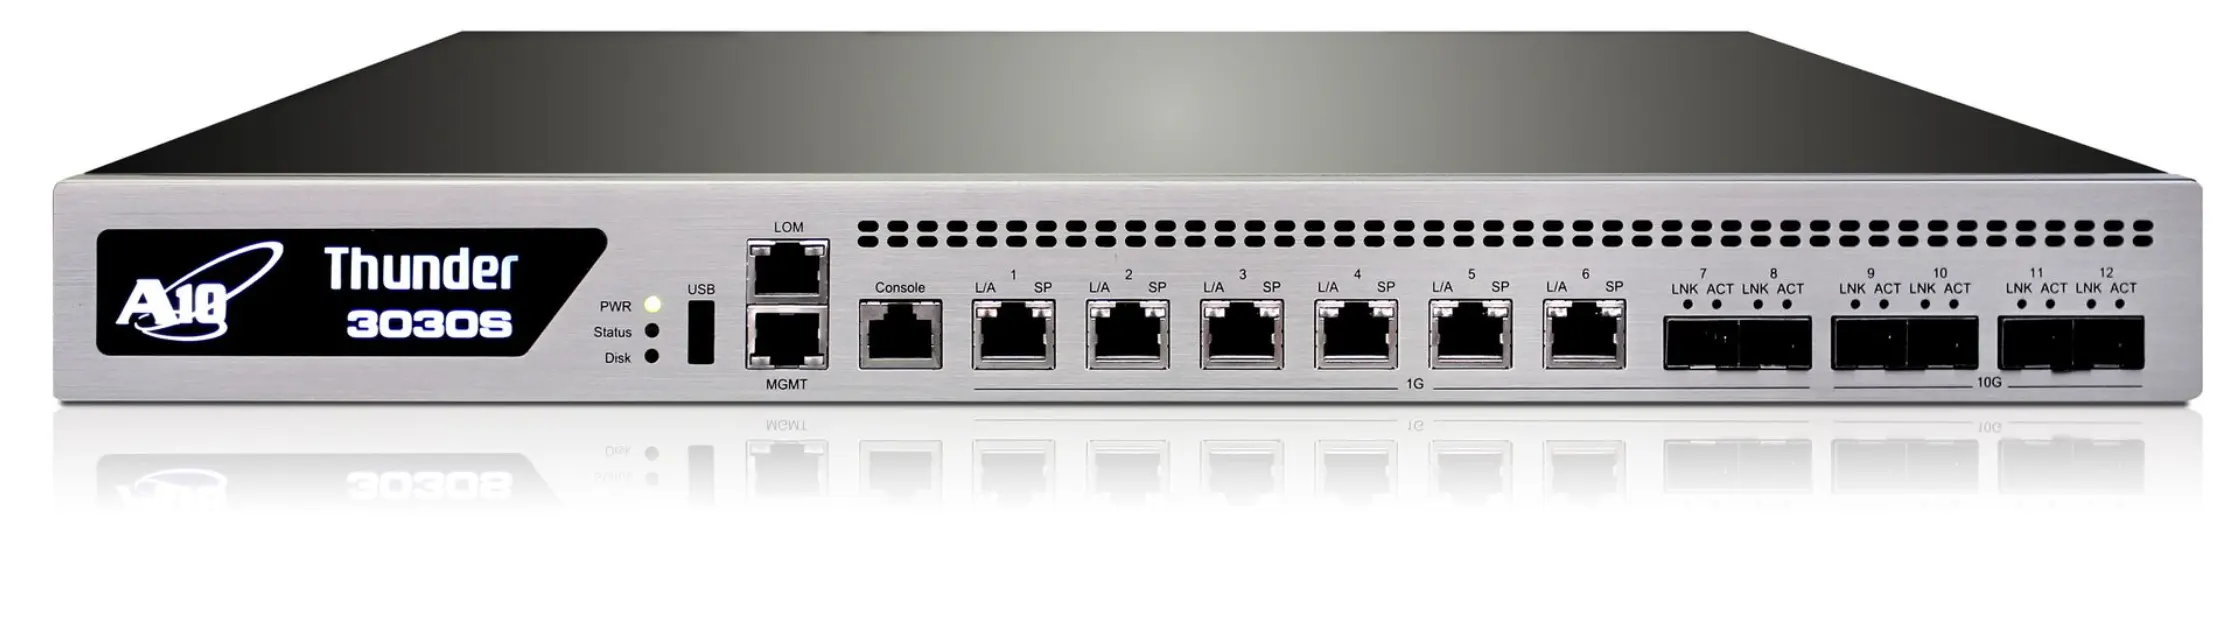 A10 شبكات رعد 3030S TH3030 خدمة البوابة التطبيق الموحدة w / CGN lic